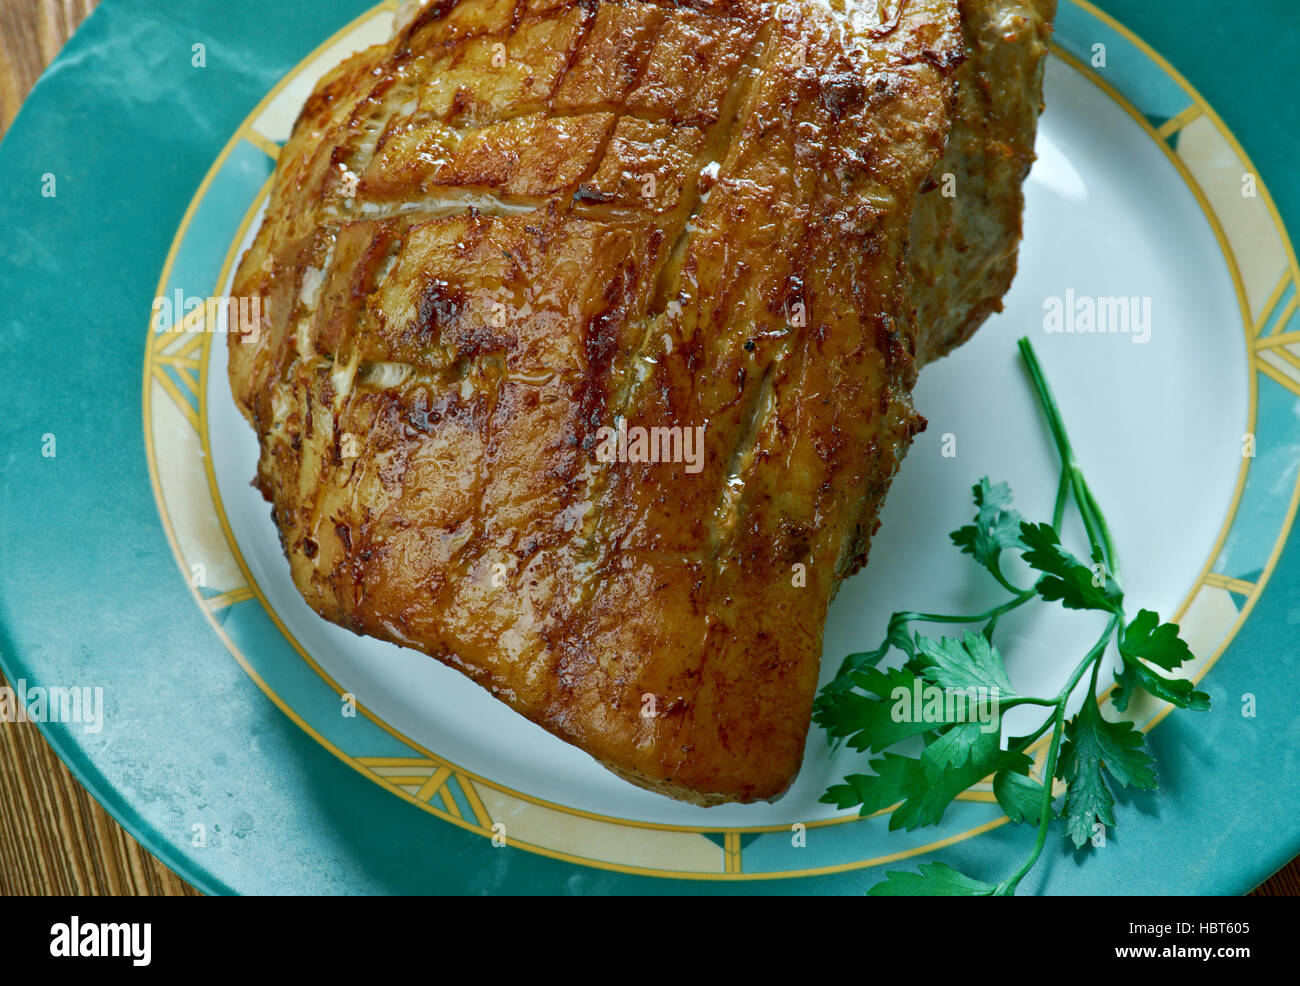 Rôti de porc danois Flaeskesteg avec grésillement pour Noël.Une cuisine danoise Banque D'Images